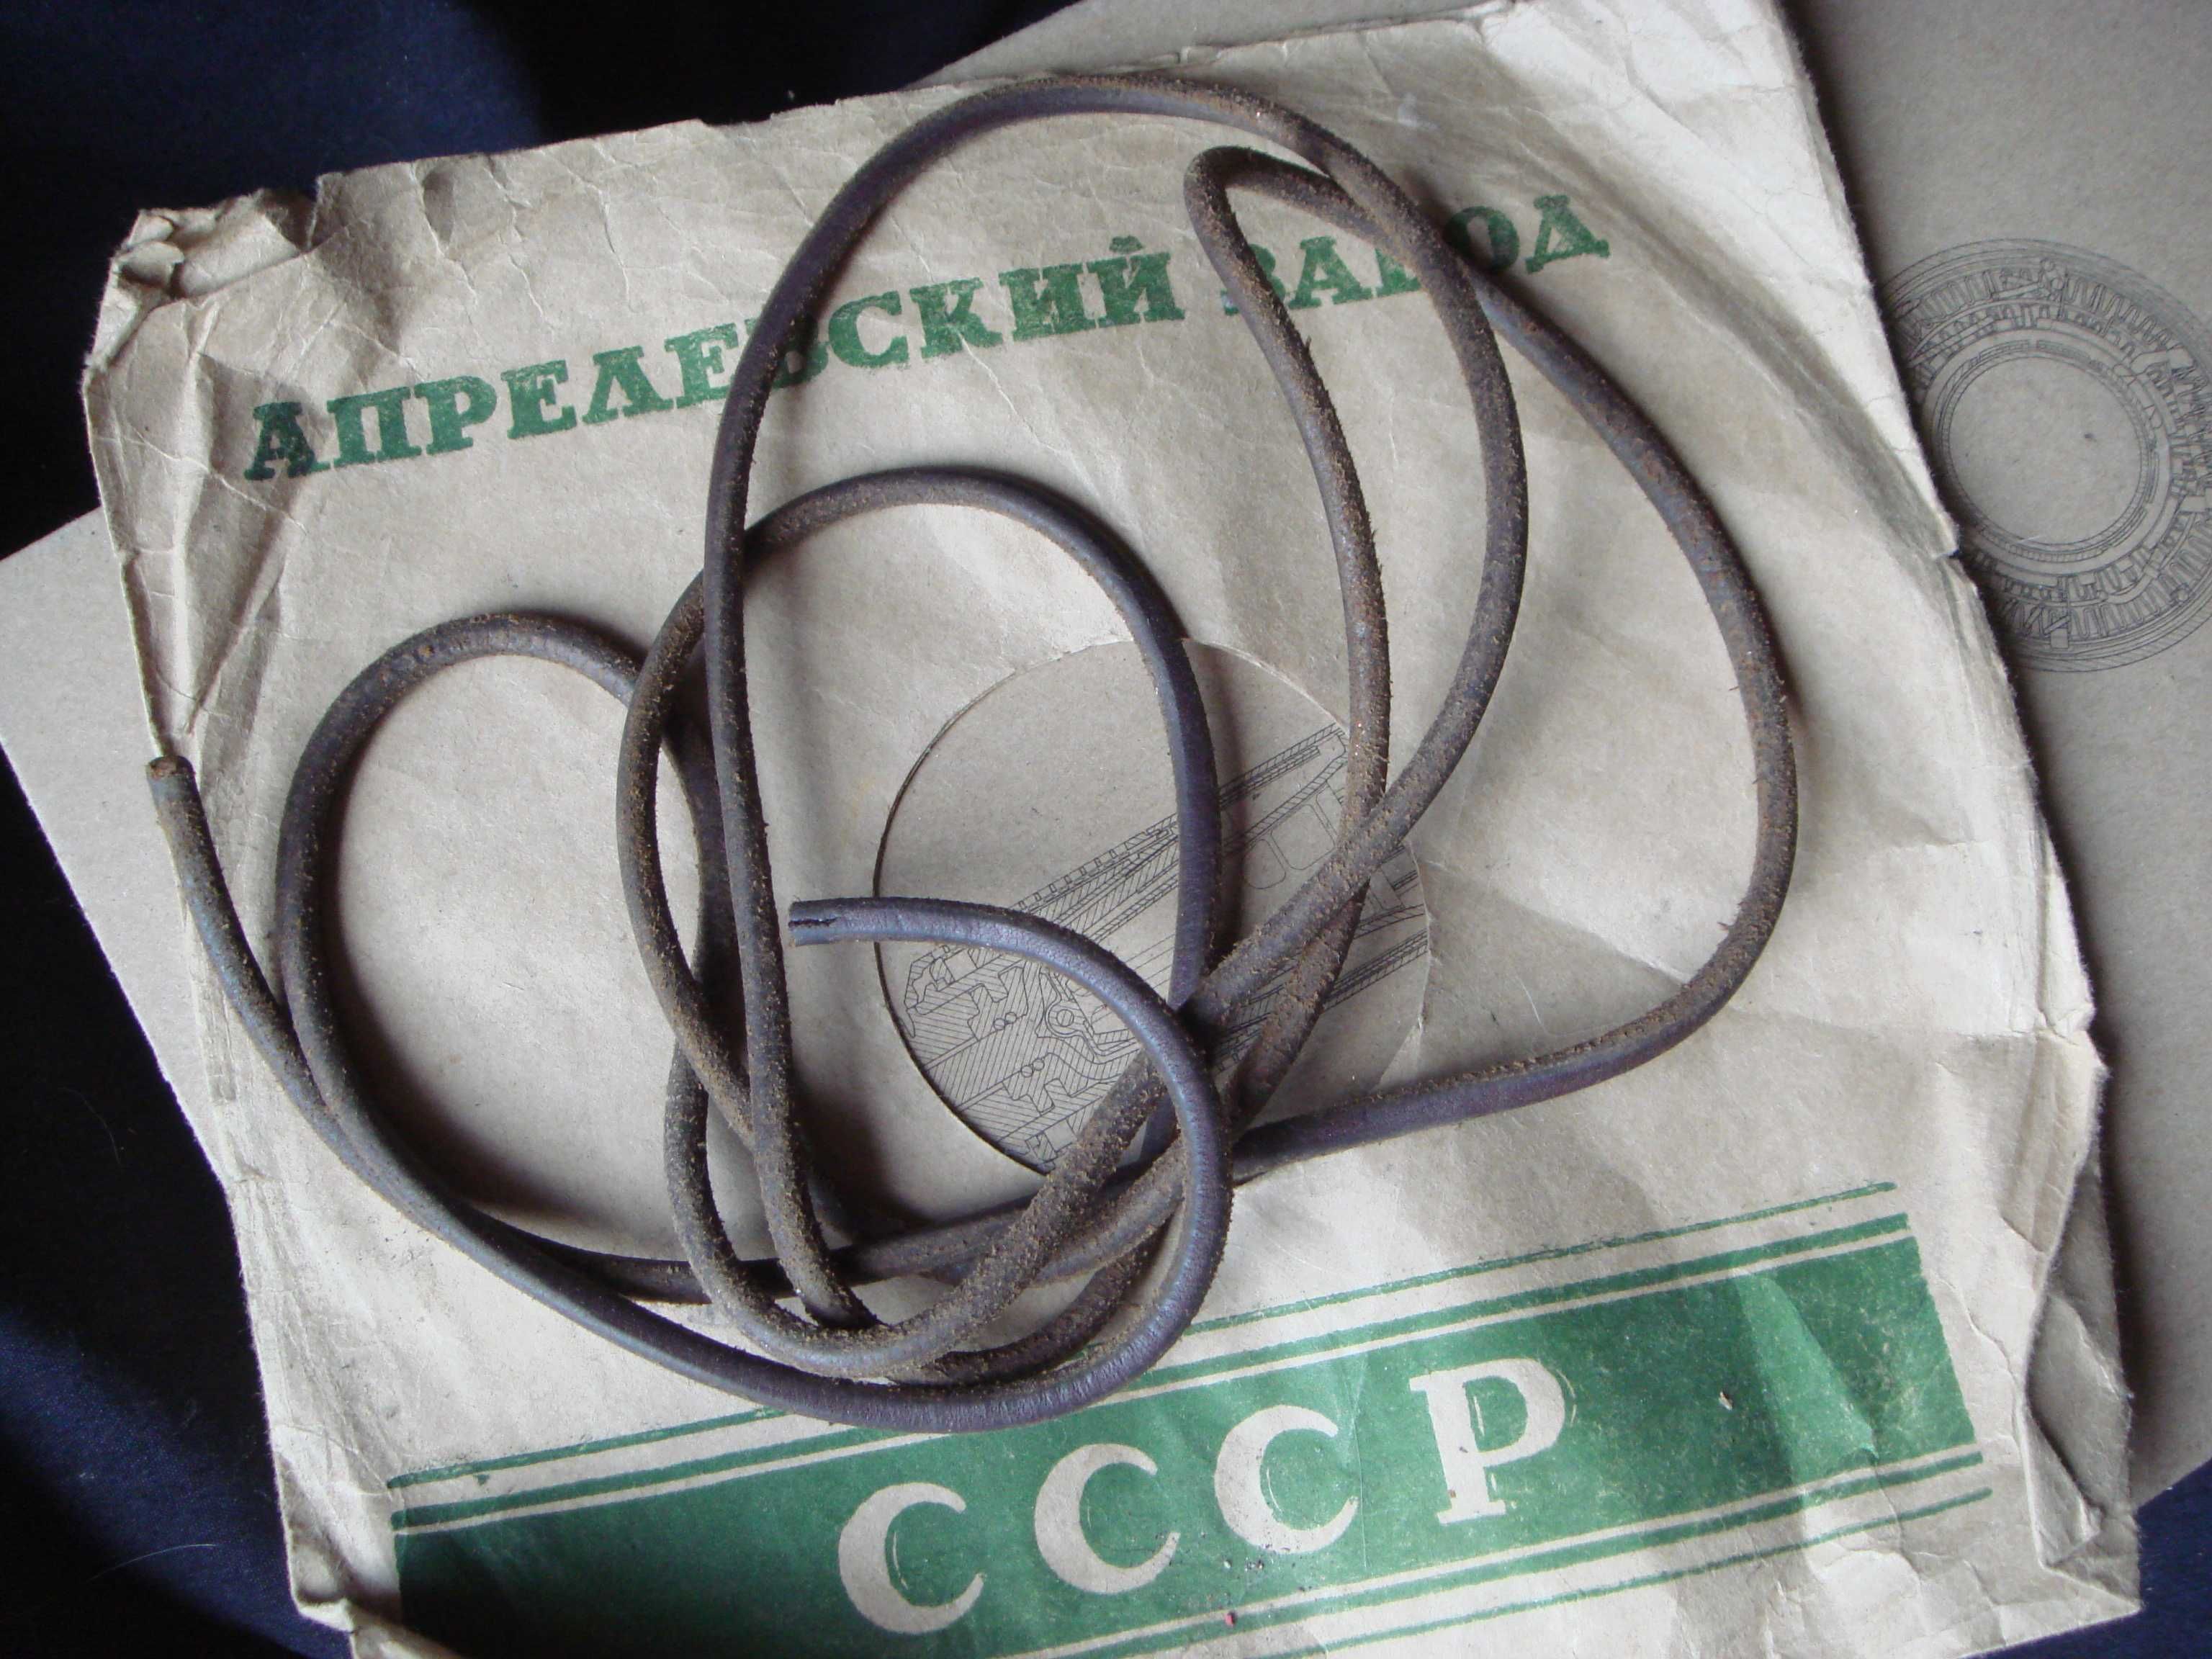 Ремень для ножной швейной машинки СССР  - НОВЫЙ в упаковке